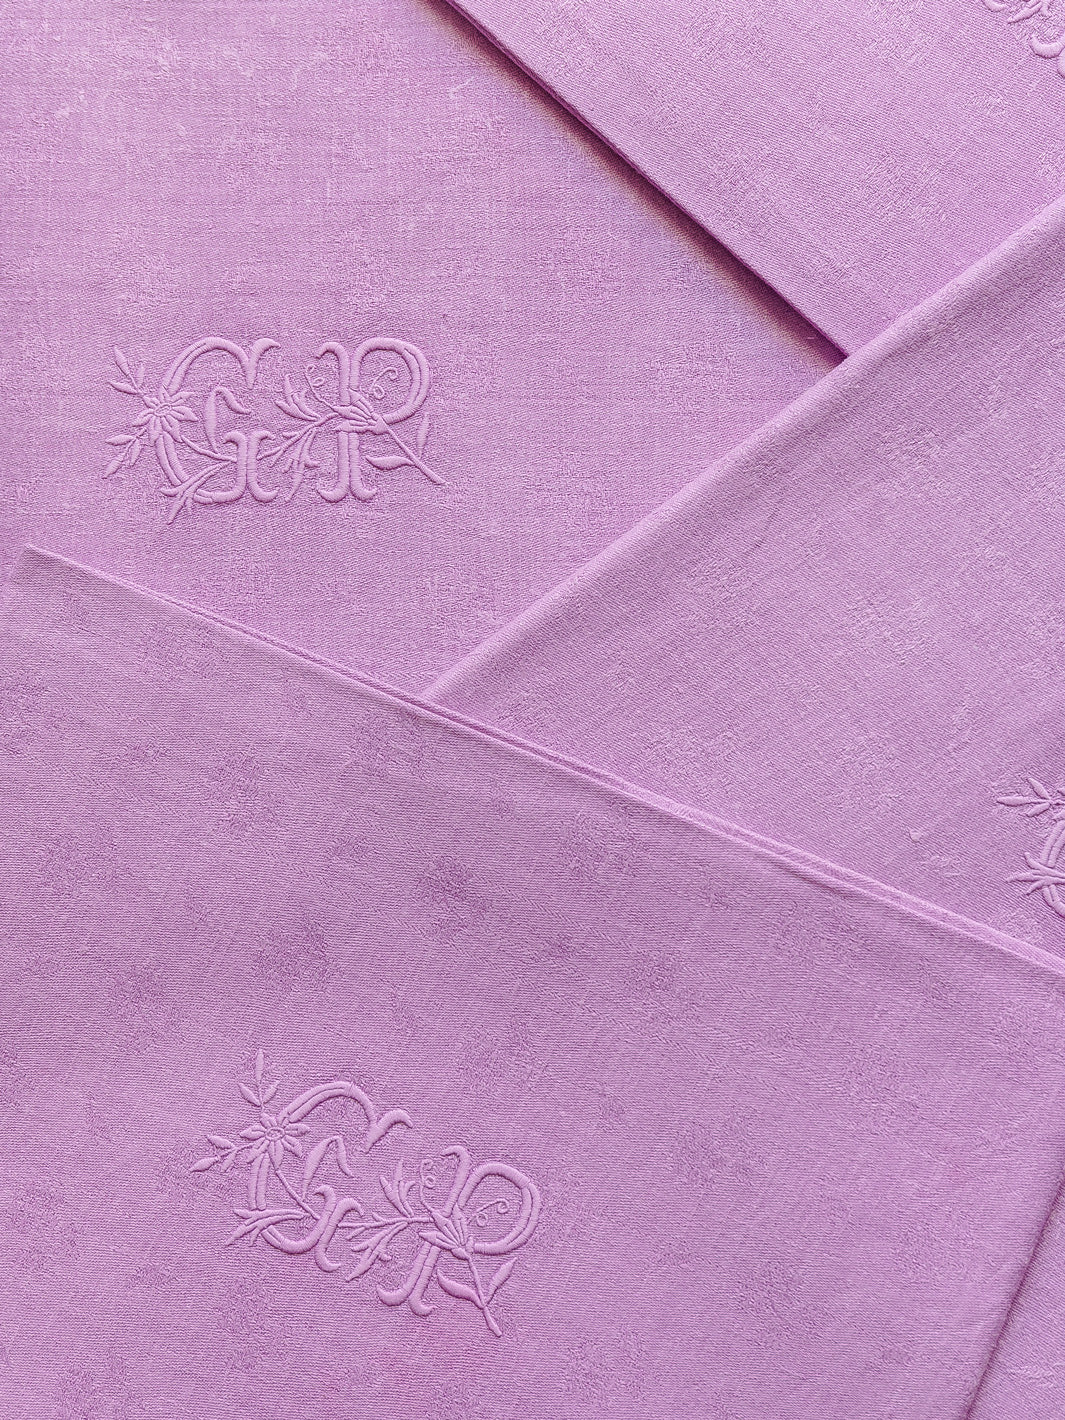 Set of 4 Violet Damas "GR" serviettes